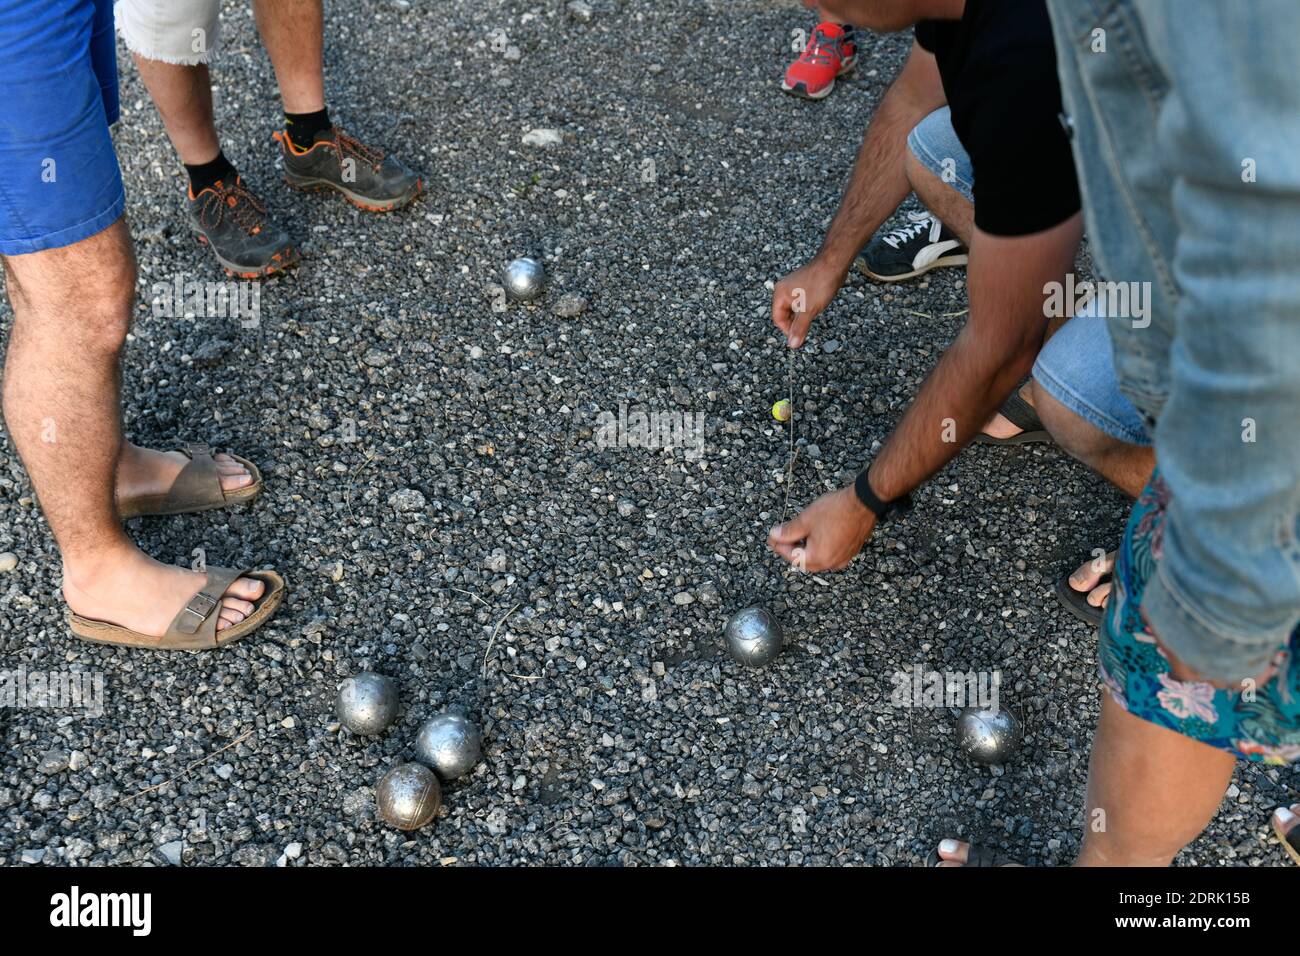 Illustration, jeu de boules du sud de la France: Joueurs mesurant la distance entre le cric et une boule Banque D'Images